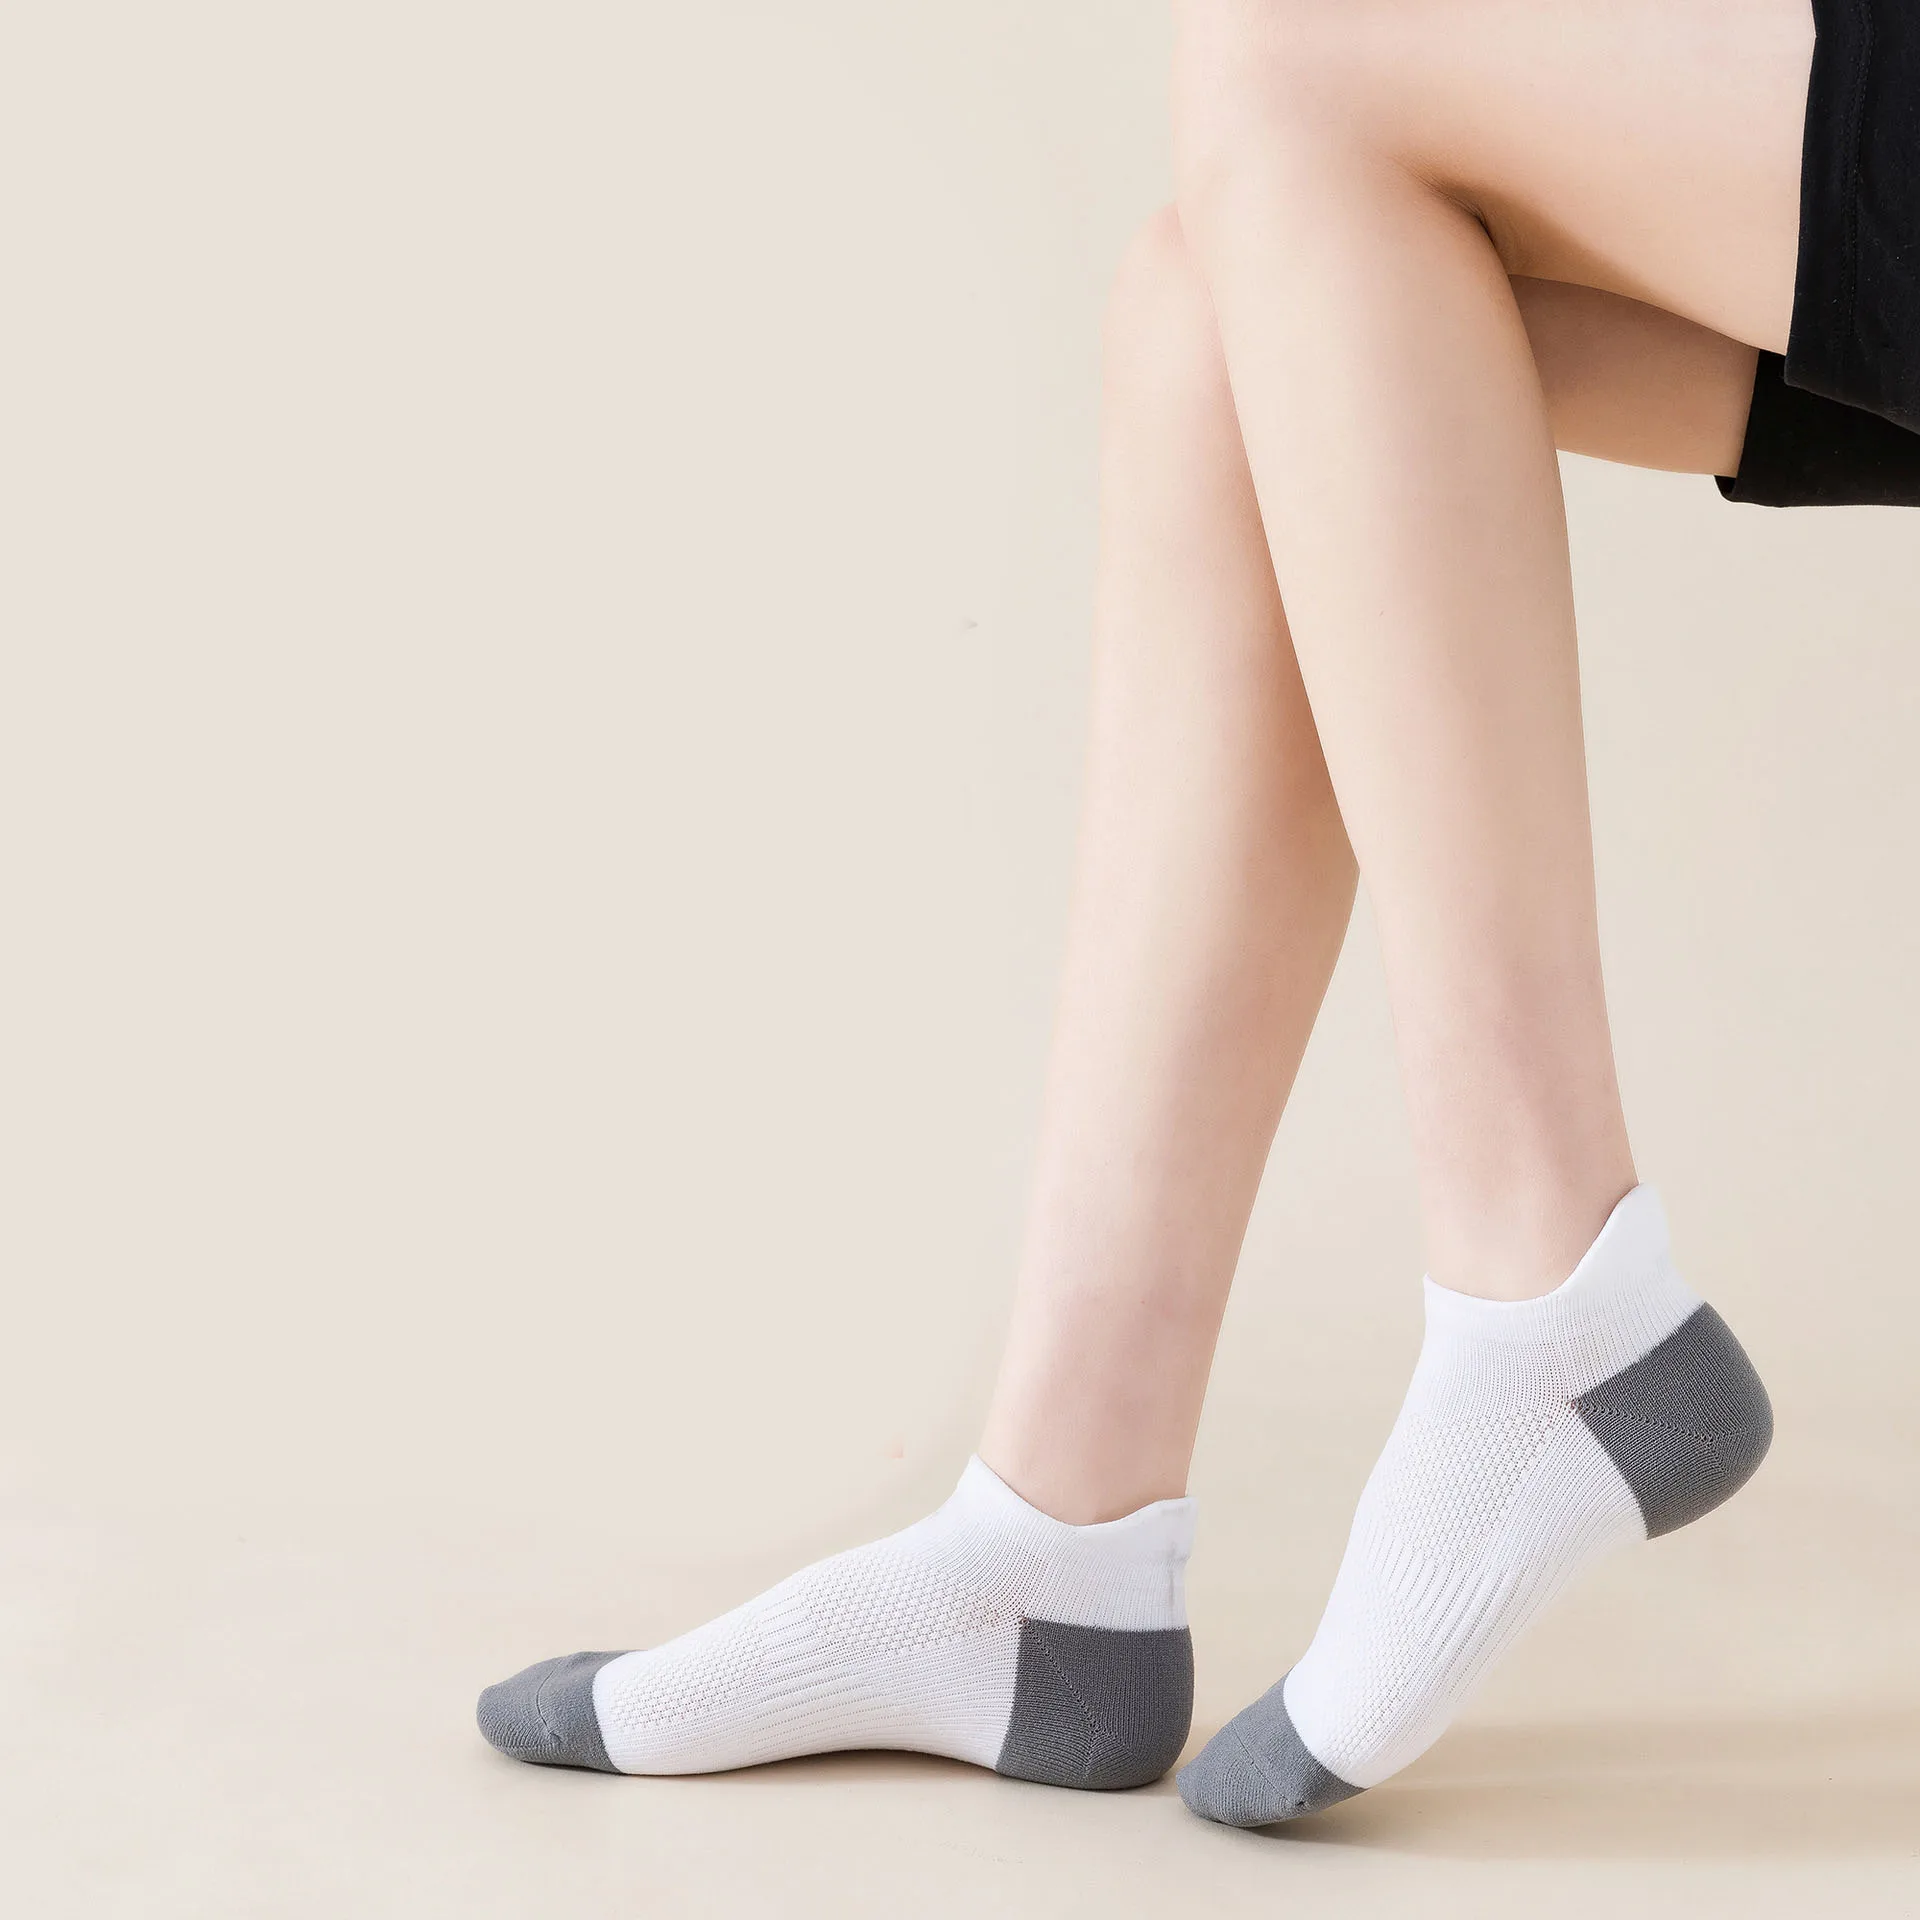 Профессиональные Спортивные Носки Для Мужчин И Женщин, Удобные Дышащие Носки Для Бега На Открытом Воздухе С Неглубоким Вырезом, Короткие Носки Для Бадминтона, Socken - 0